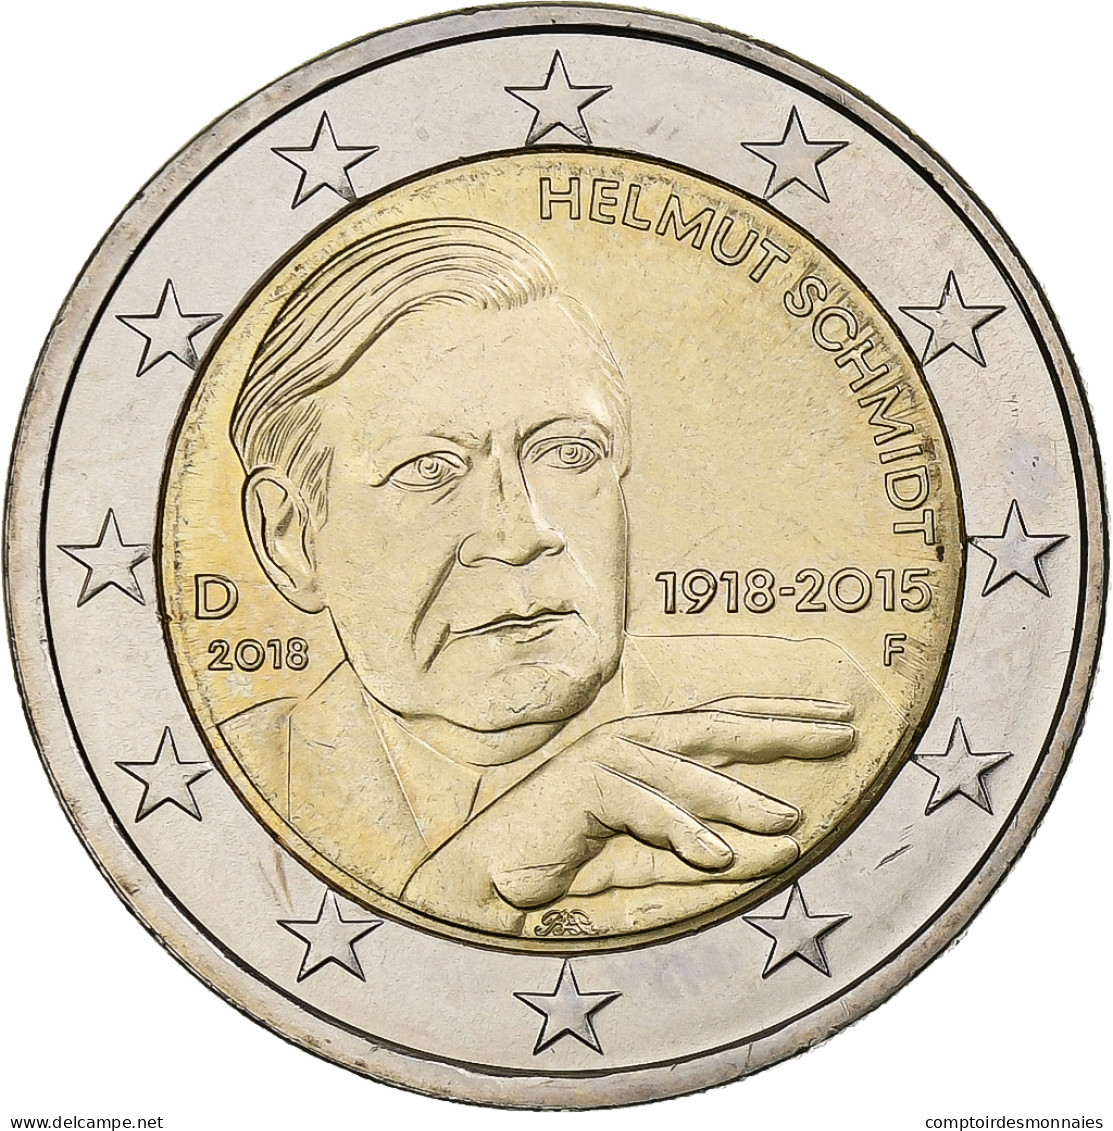 République Fédérale Allemande, 2 Euro, 2018, Stuttgart, Bimétallique, SPL - Allemagne